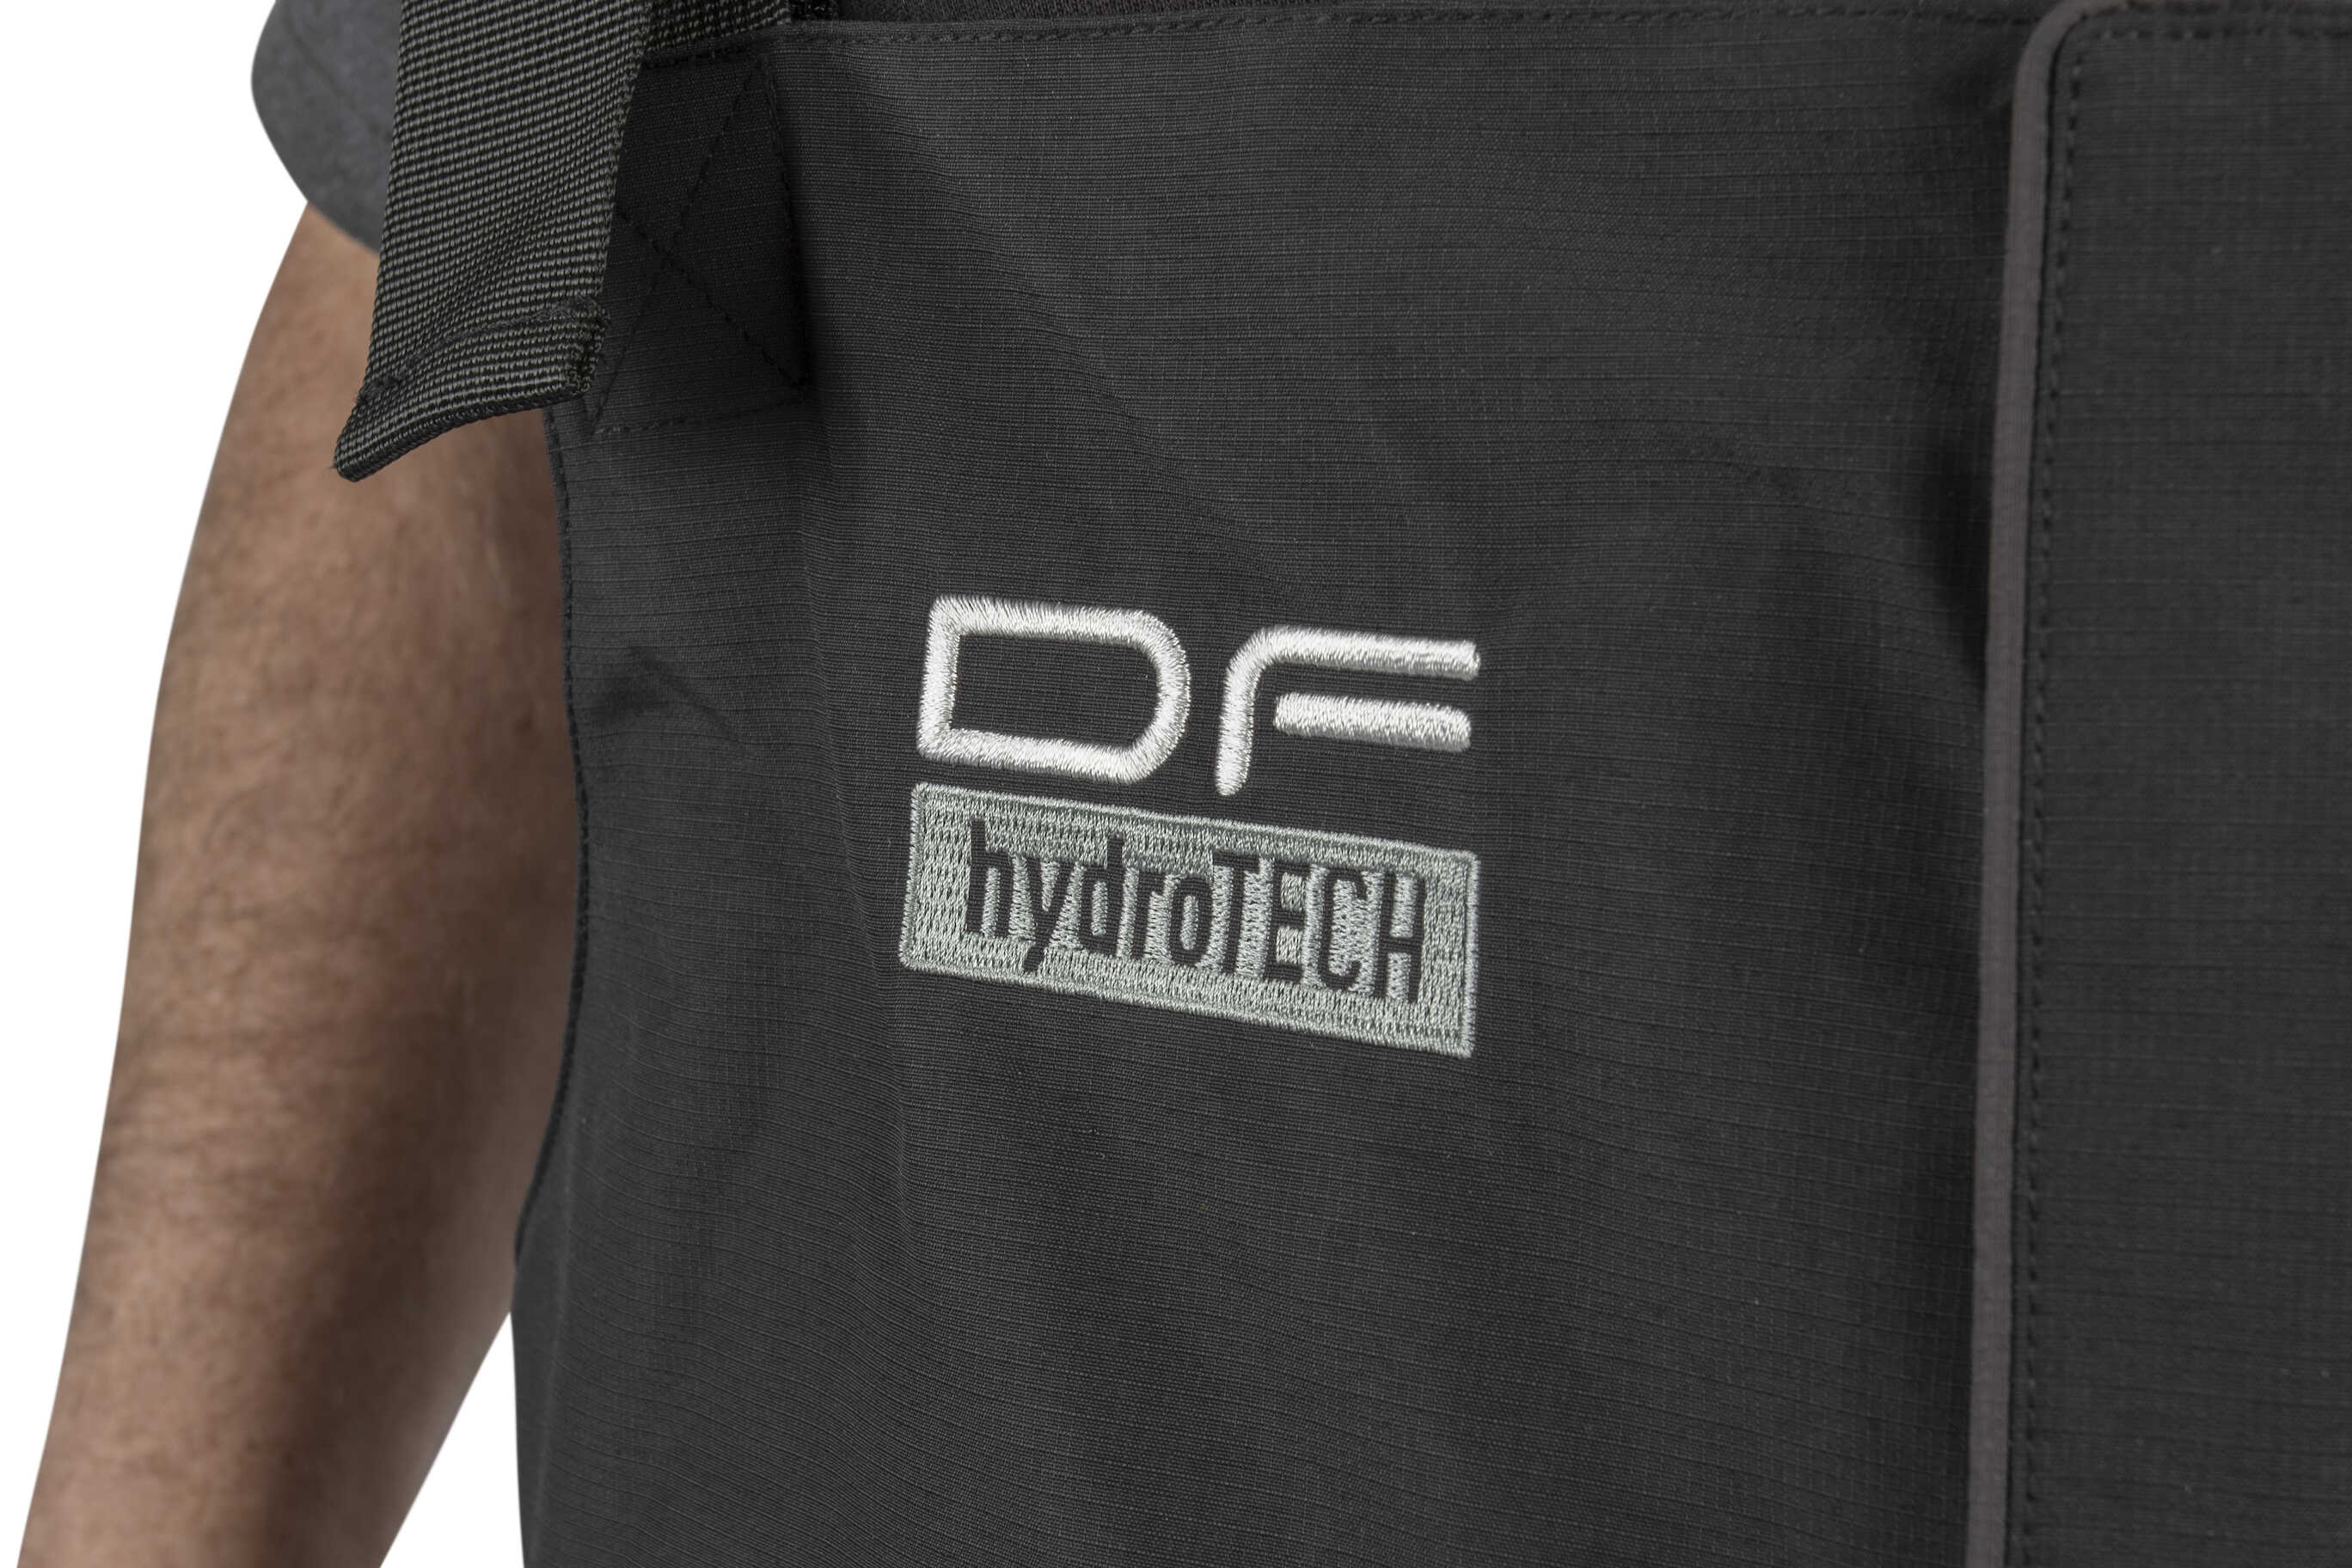 Combinaison thermique Preston DF Hydrotech Suit